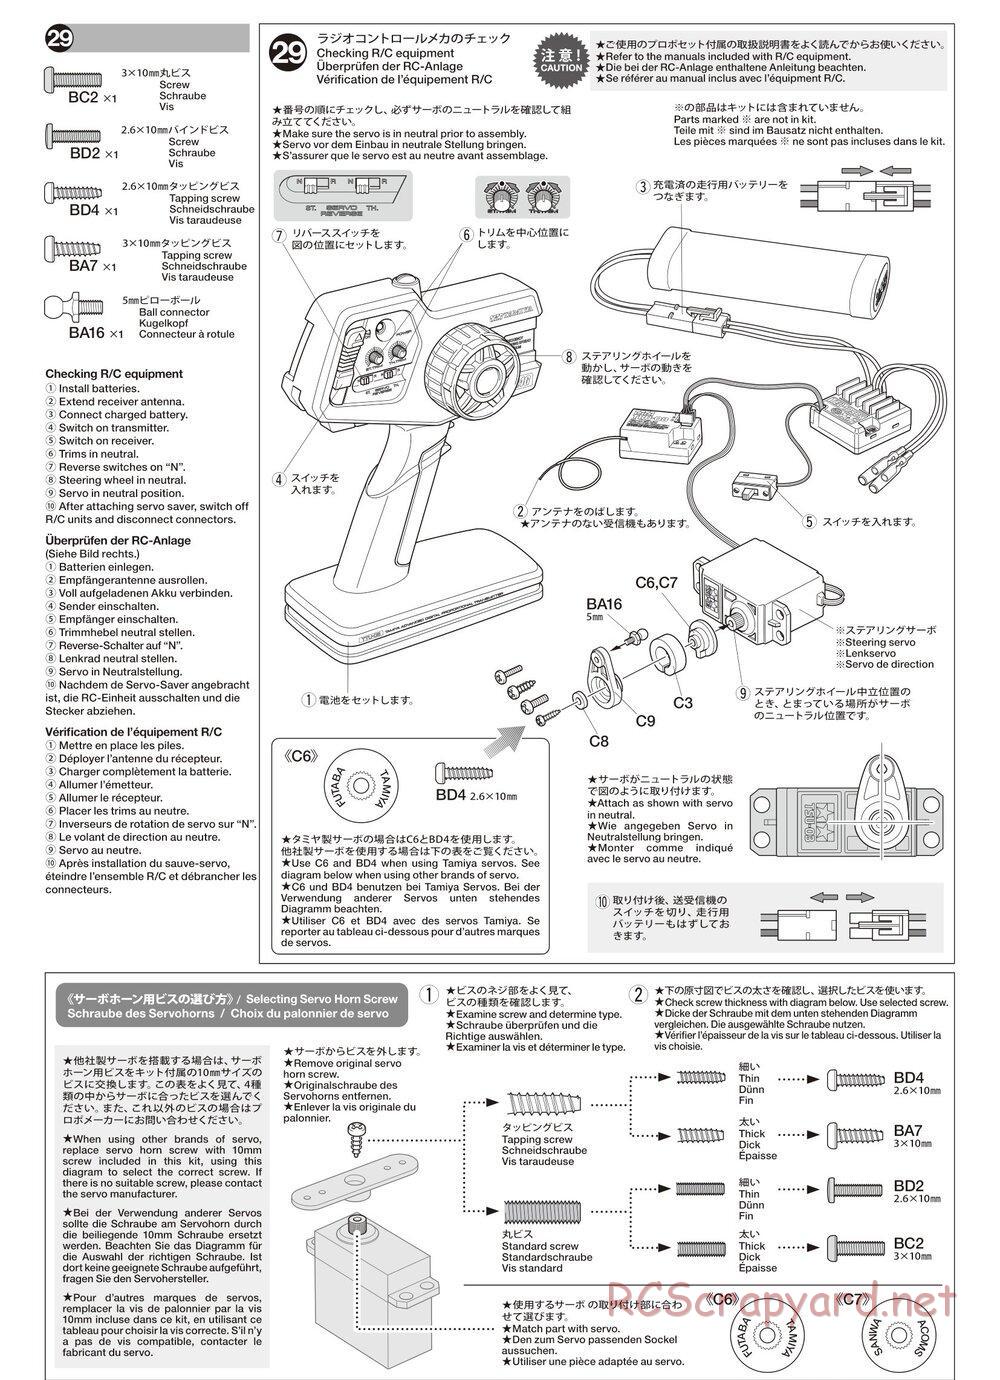 Tamiya - TA02SW Chassis - Manual - Page 14